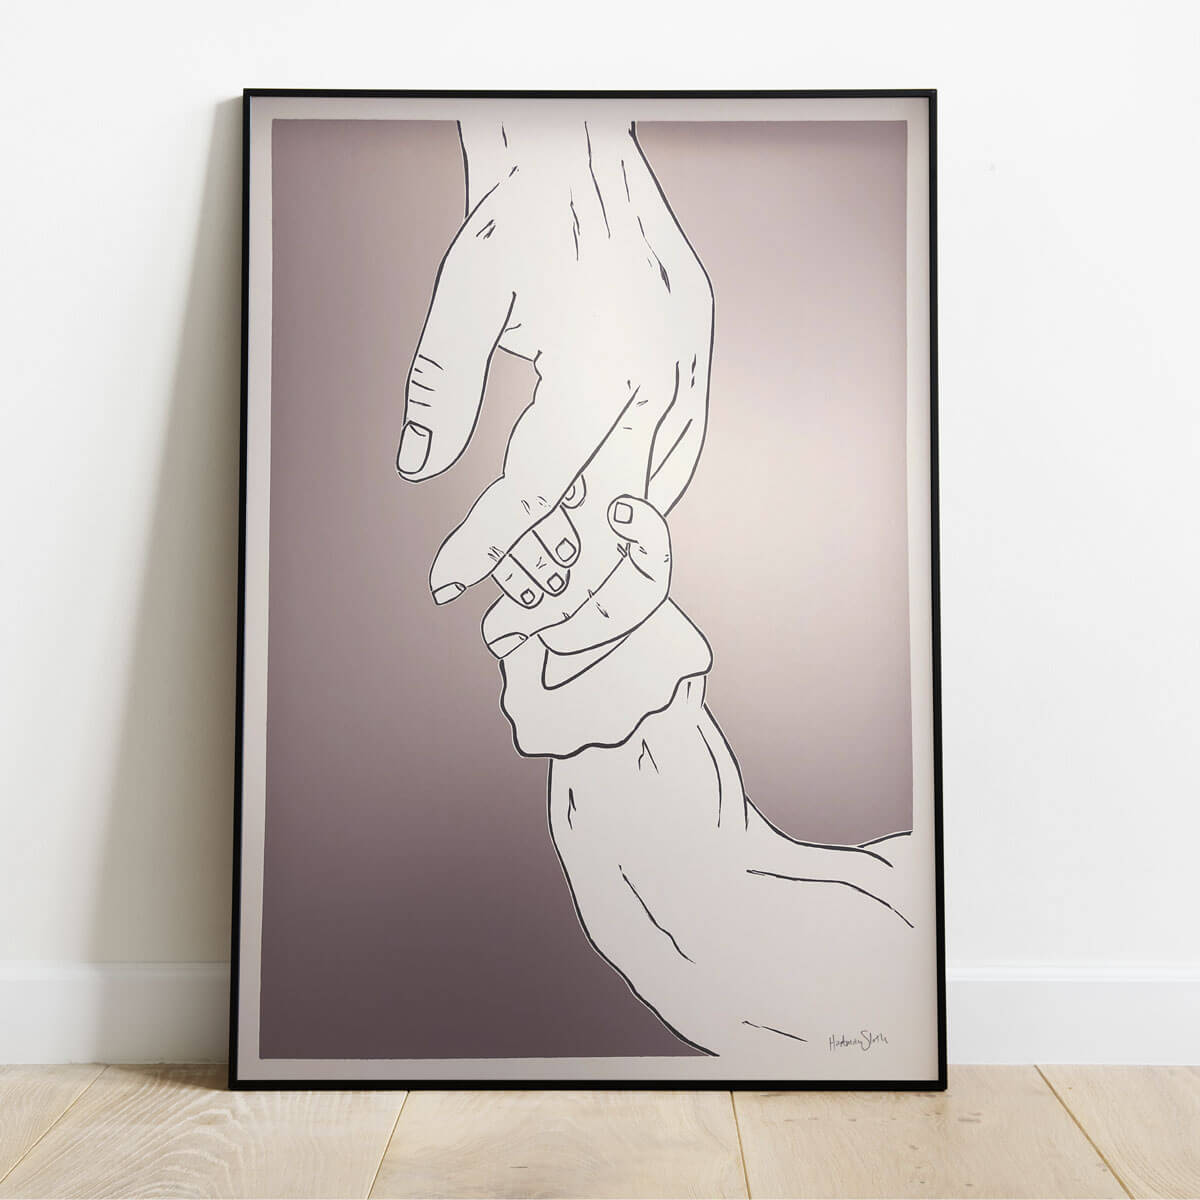 Køb kunstplakaten 'Tag min hånd' støt Mødrehjælpens